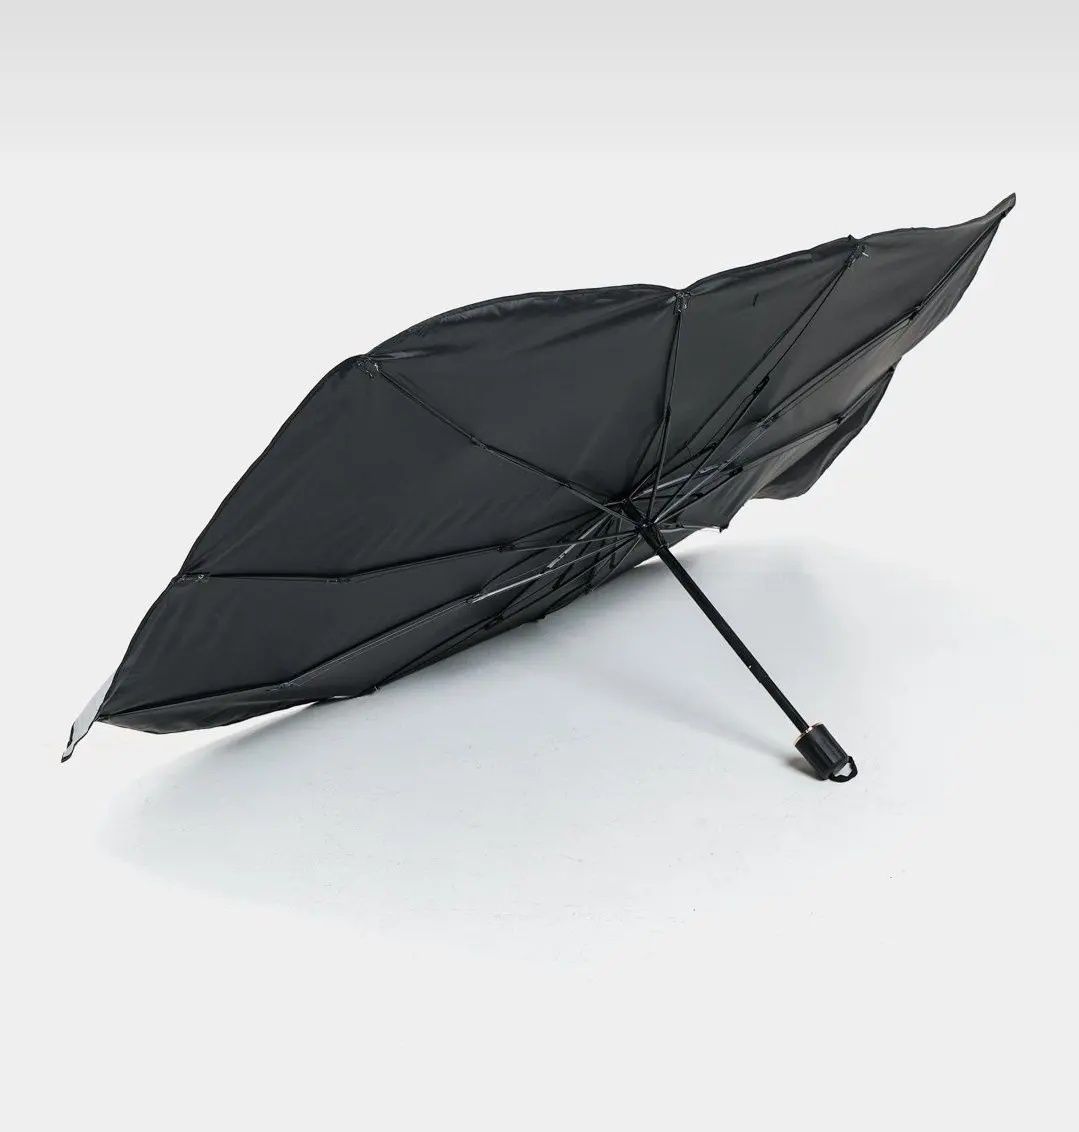 Солнцезащитный зонт для Автомобиля в жаркий летний день! Доставка есть